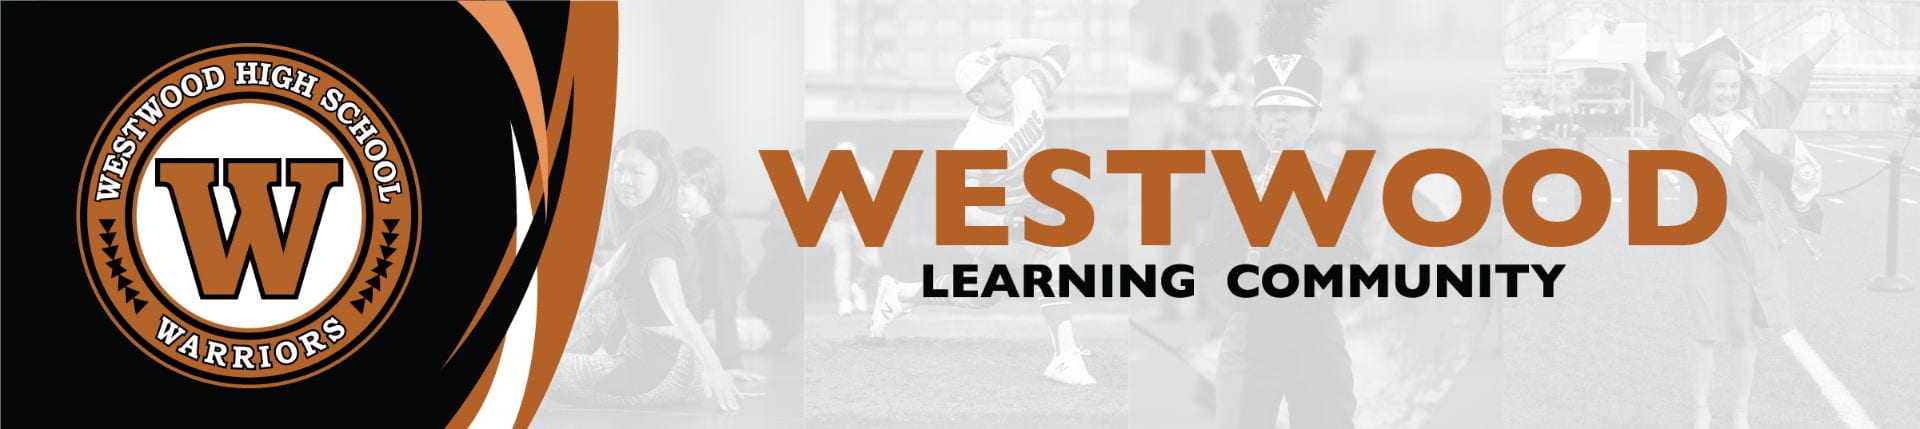 Westwood Learning Community